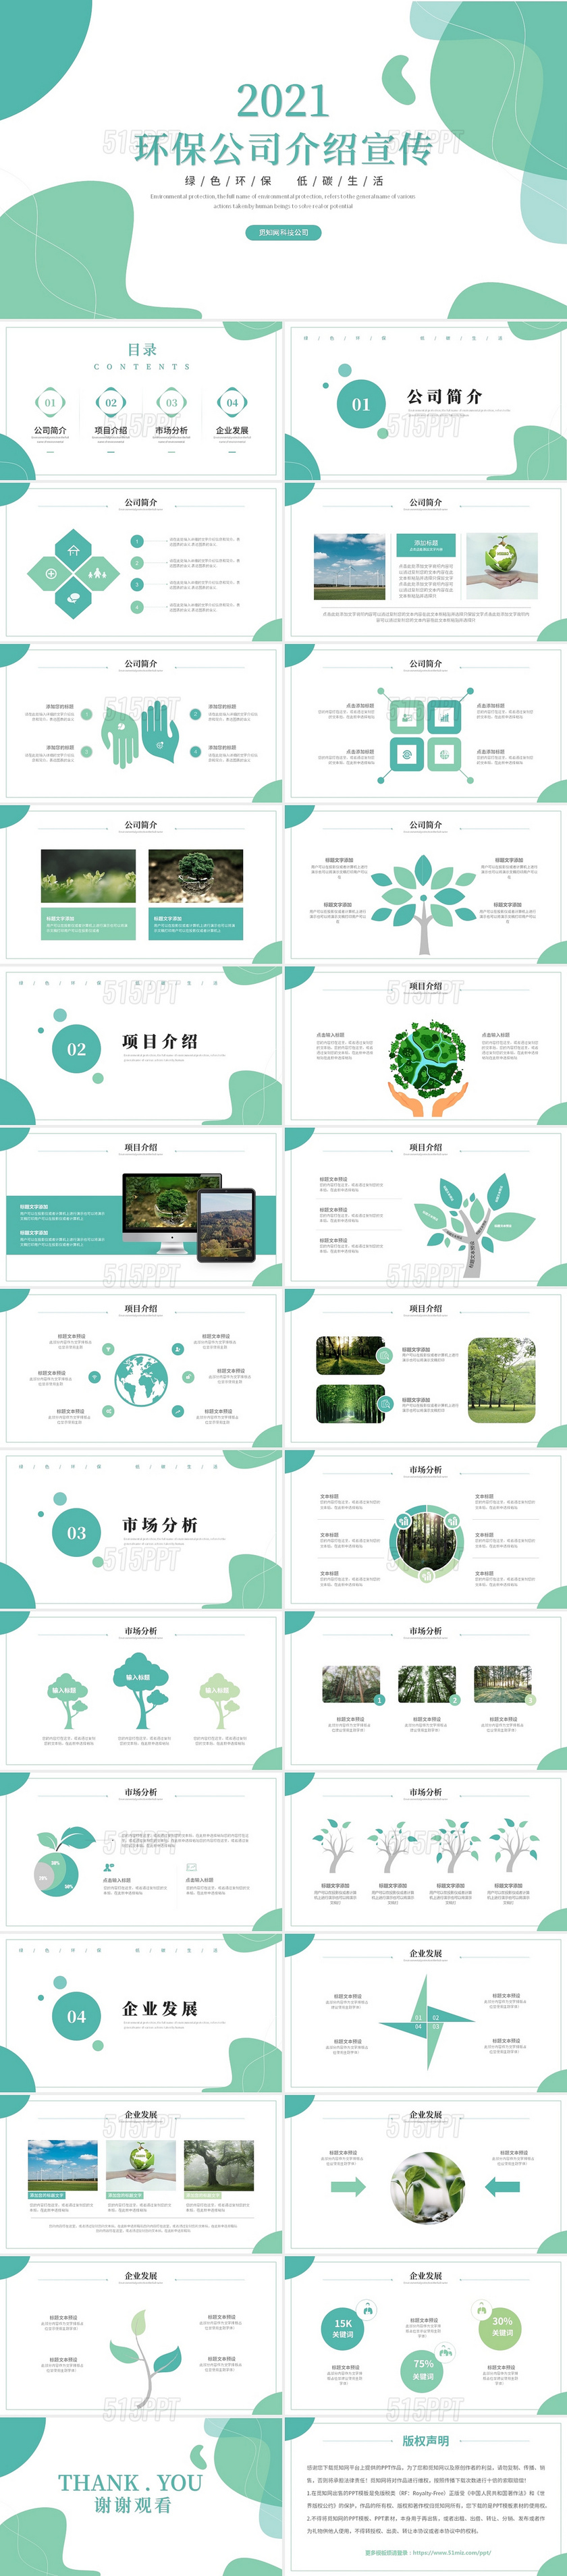 清新简约绿色环保公司介绍企业宣传ppt模板